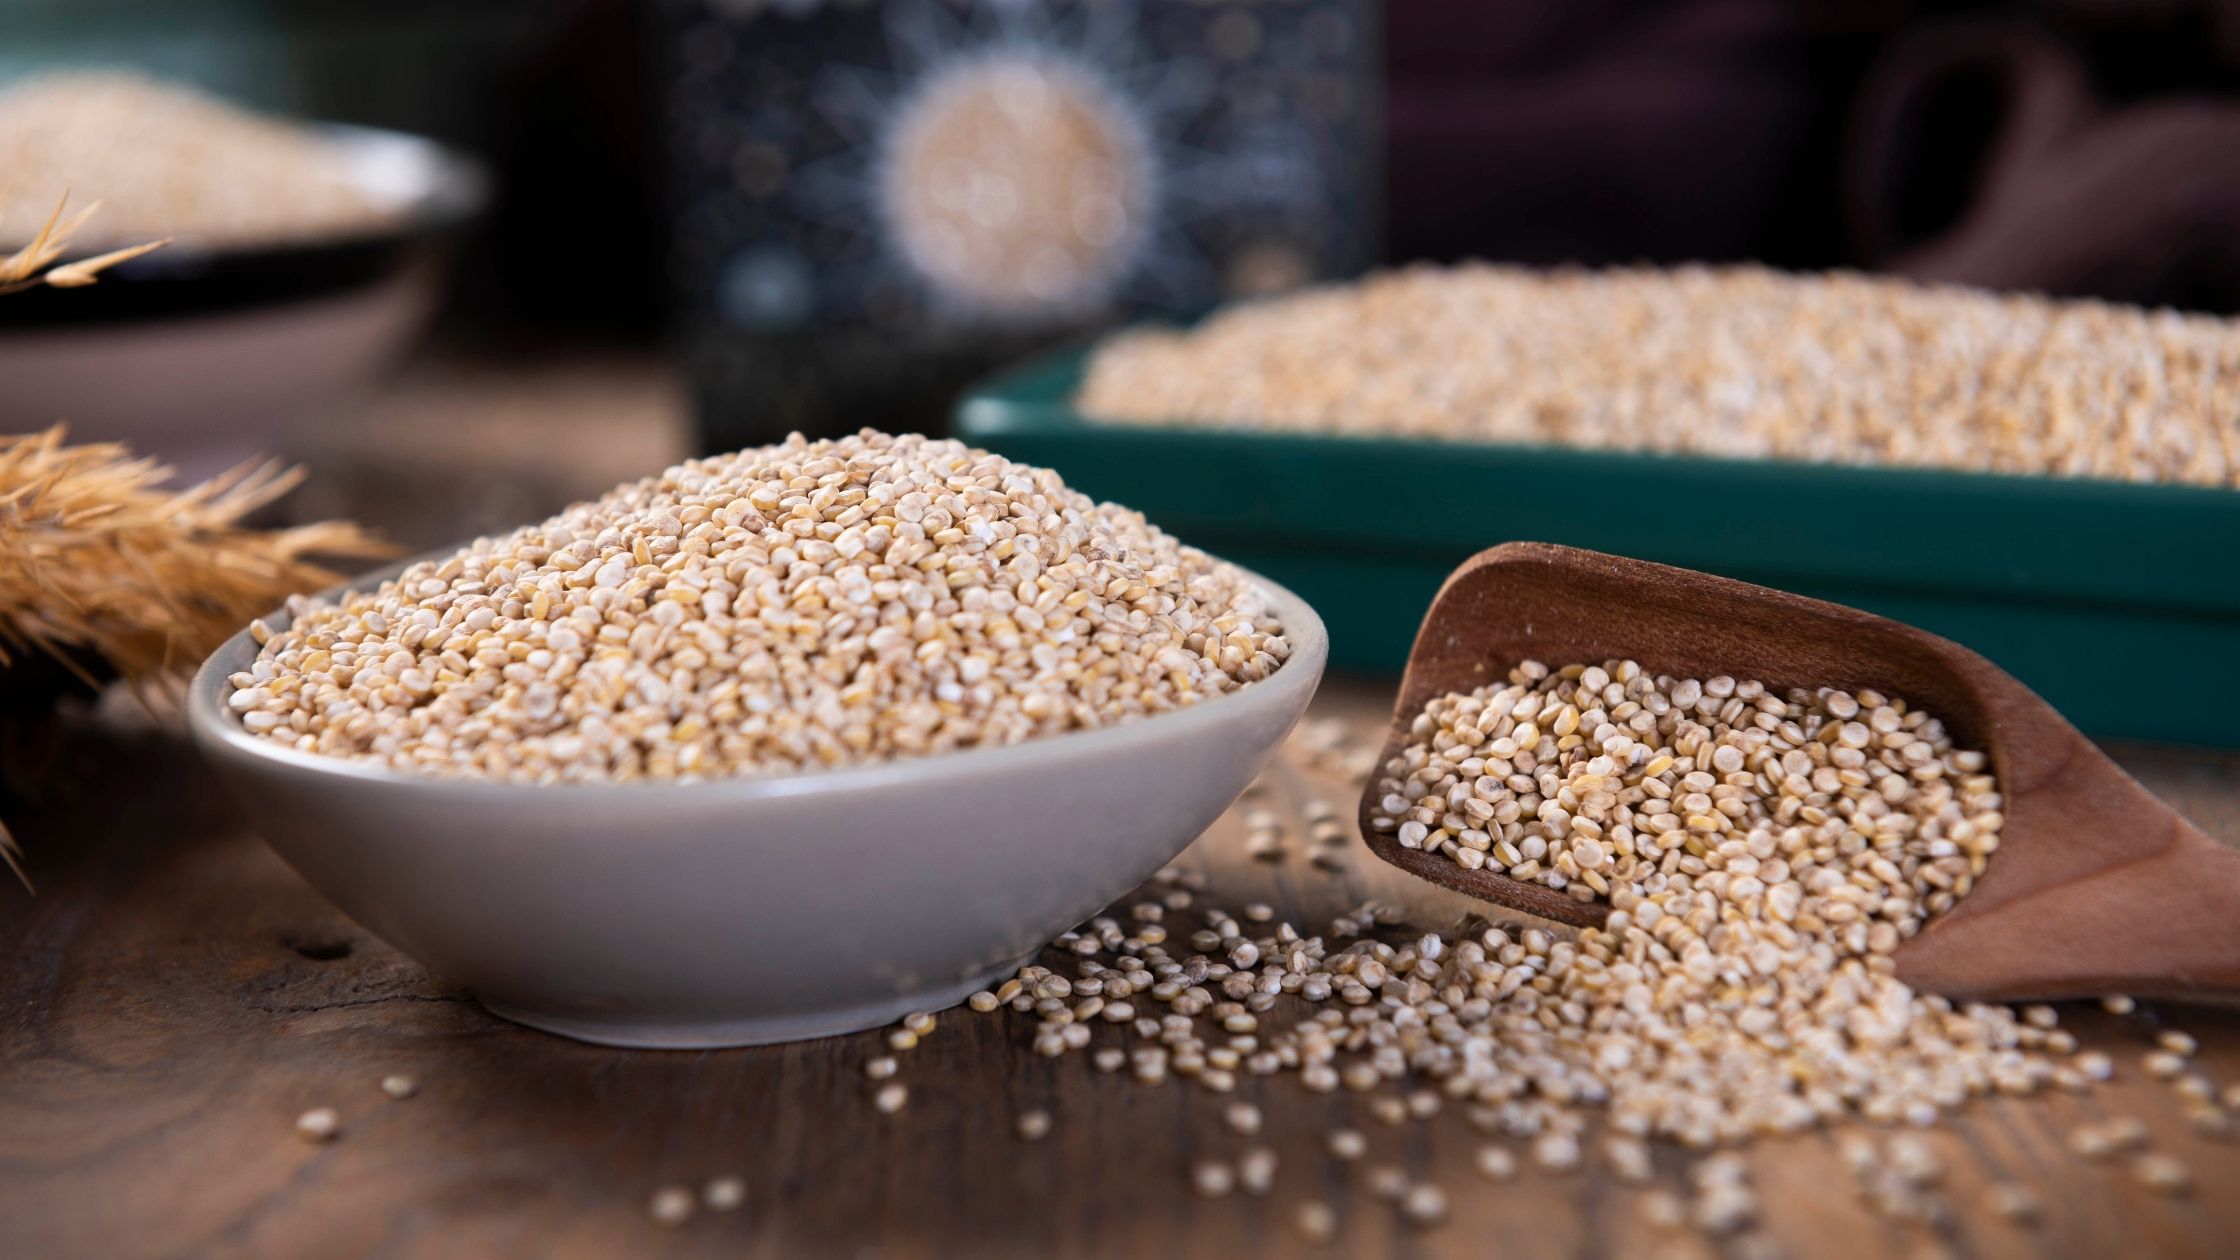 Quinoa: A Complete Protein Source